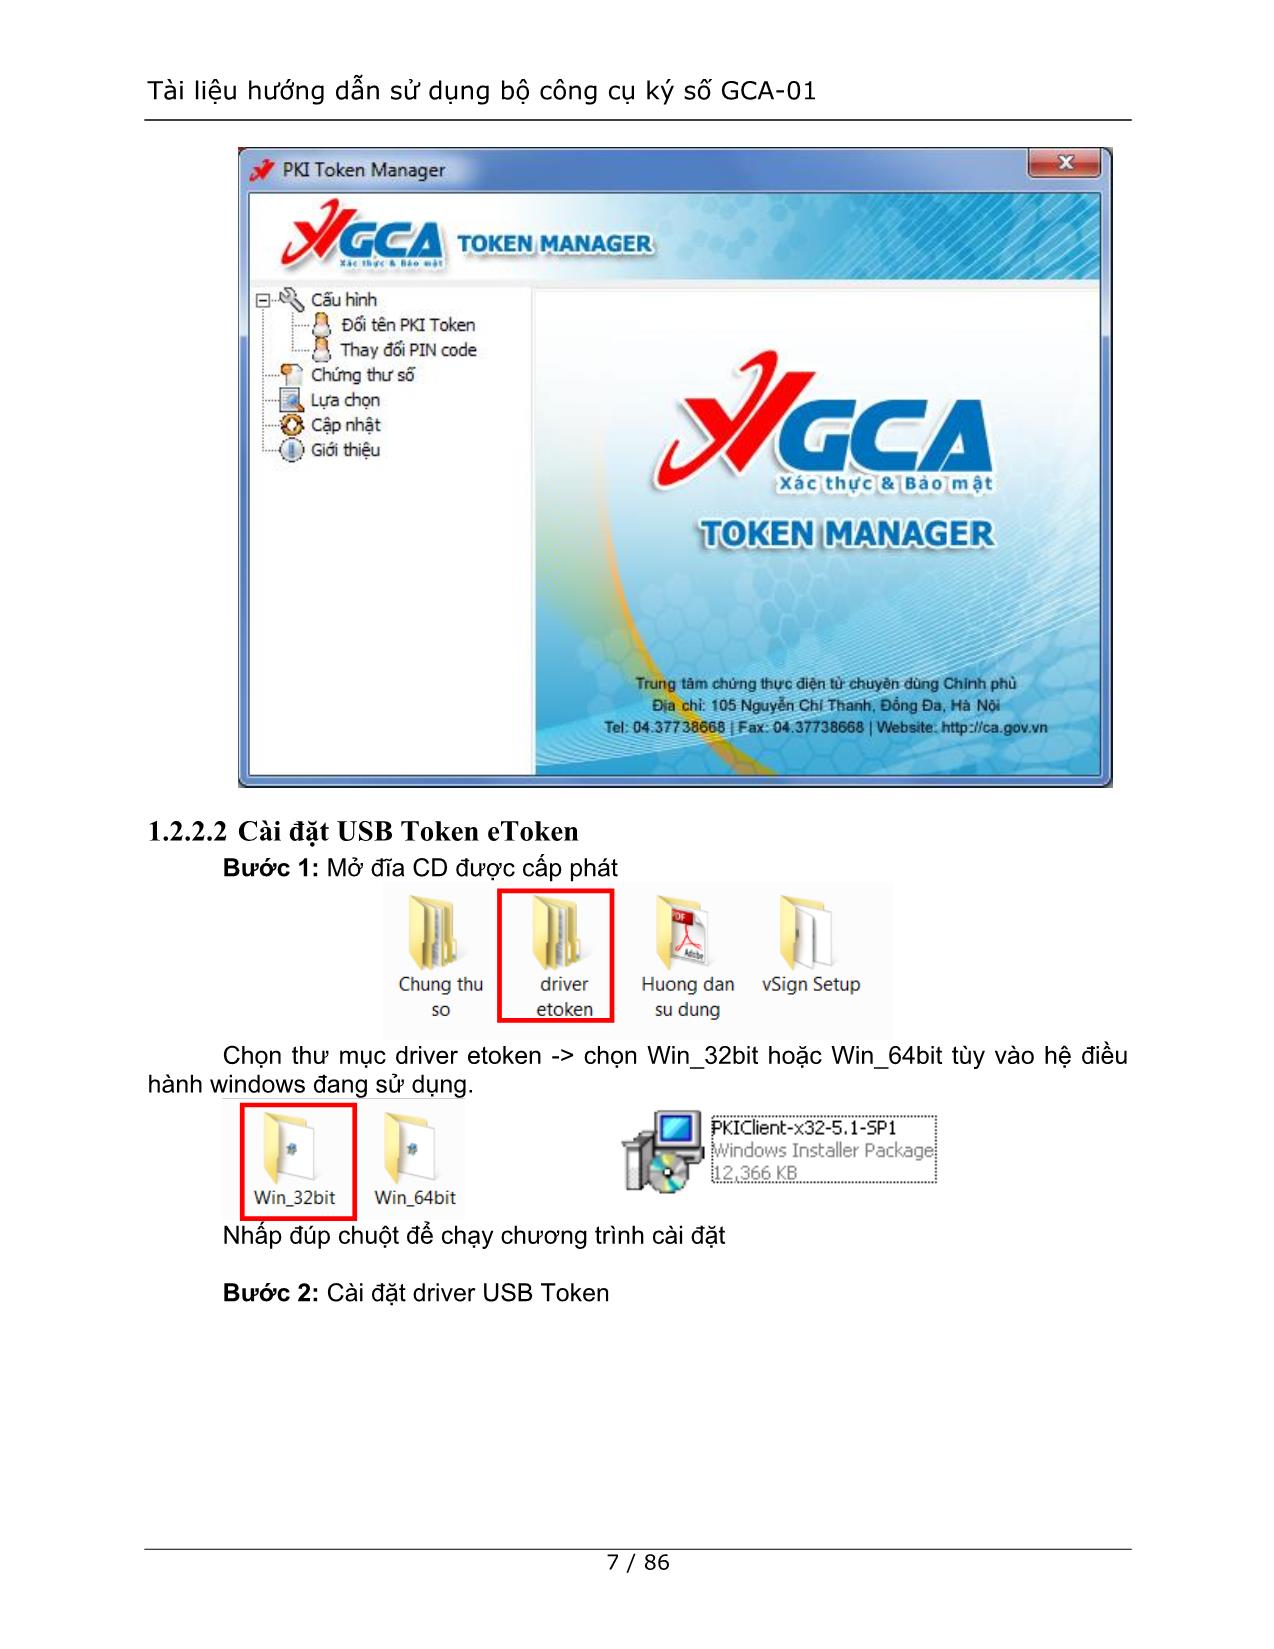 Tài liệu hướng dẫn sử dụng bộ công cụ ký số GCA-01 trang 7